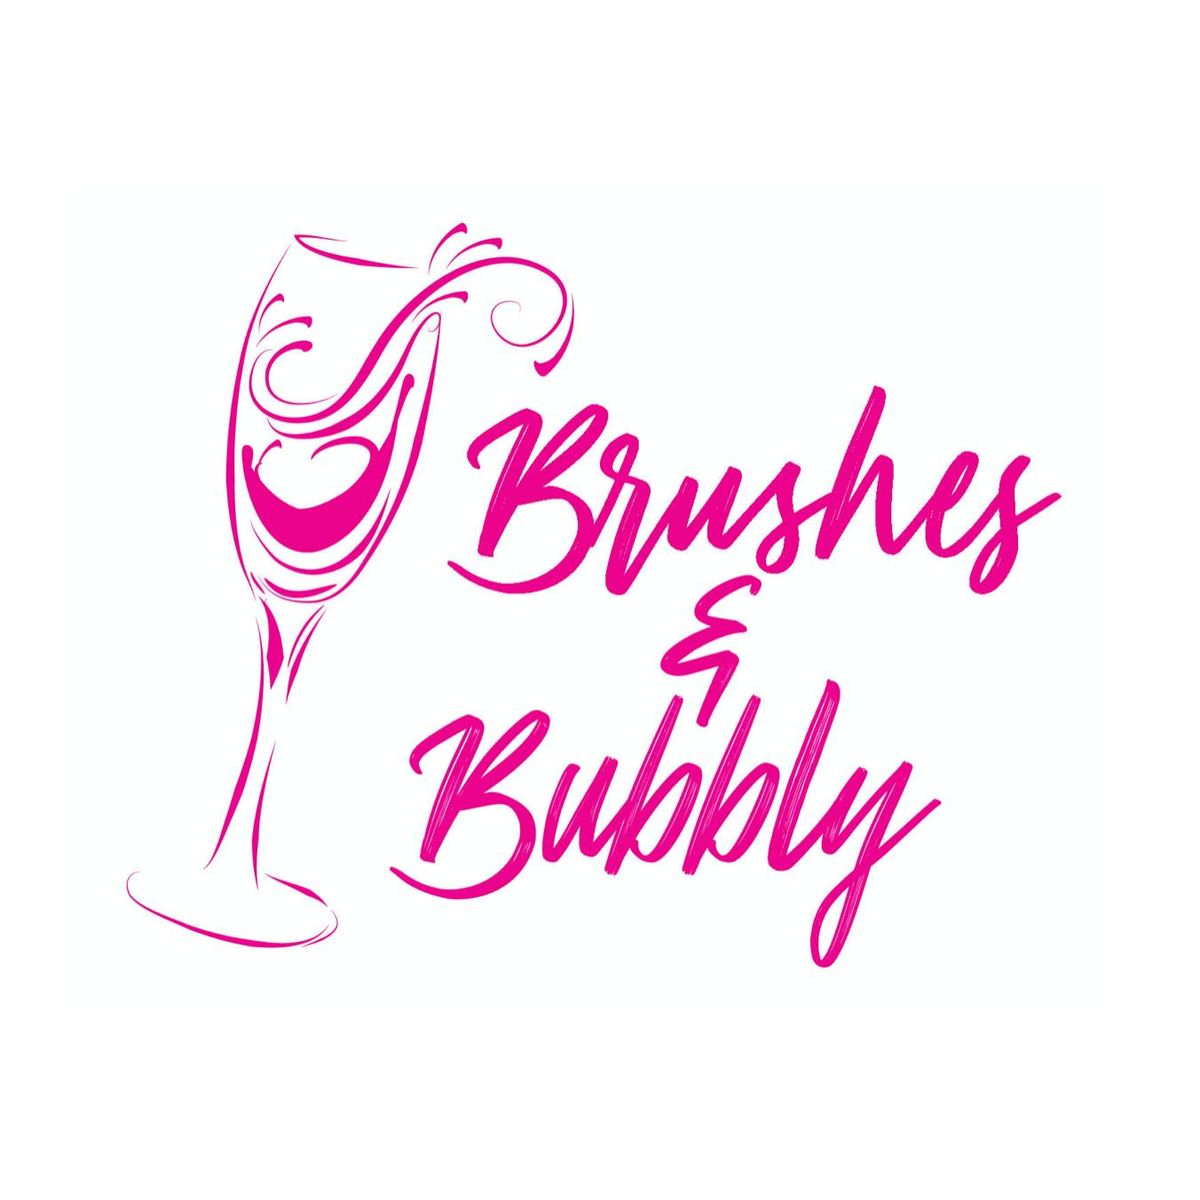 Brushes & Bubbly Craft Night